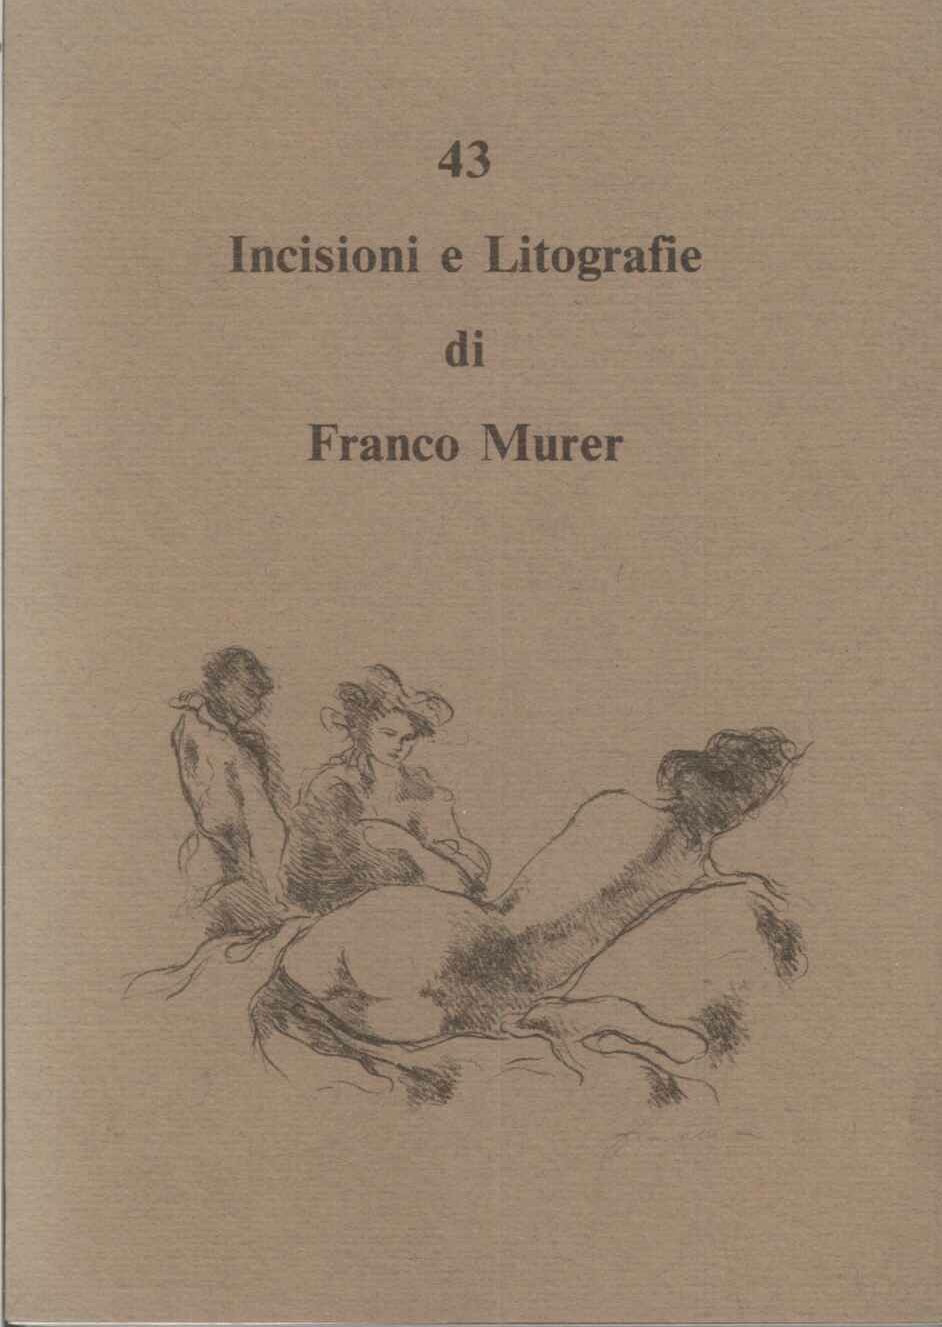 43 Incisioni e litografie di Franco Murer